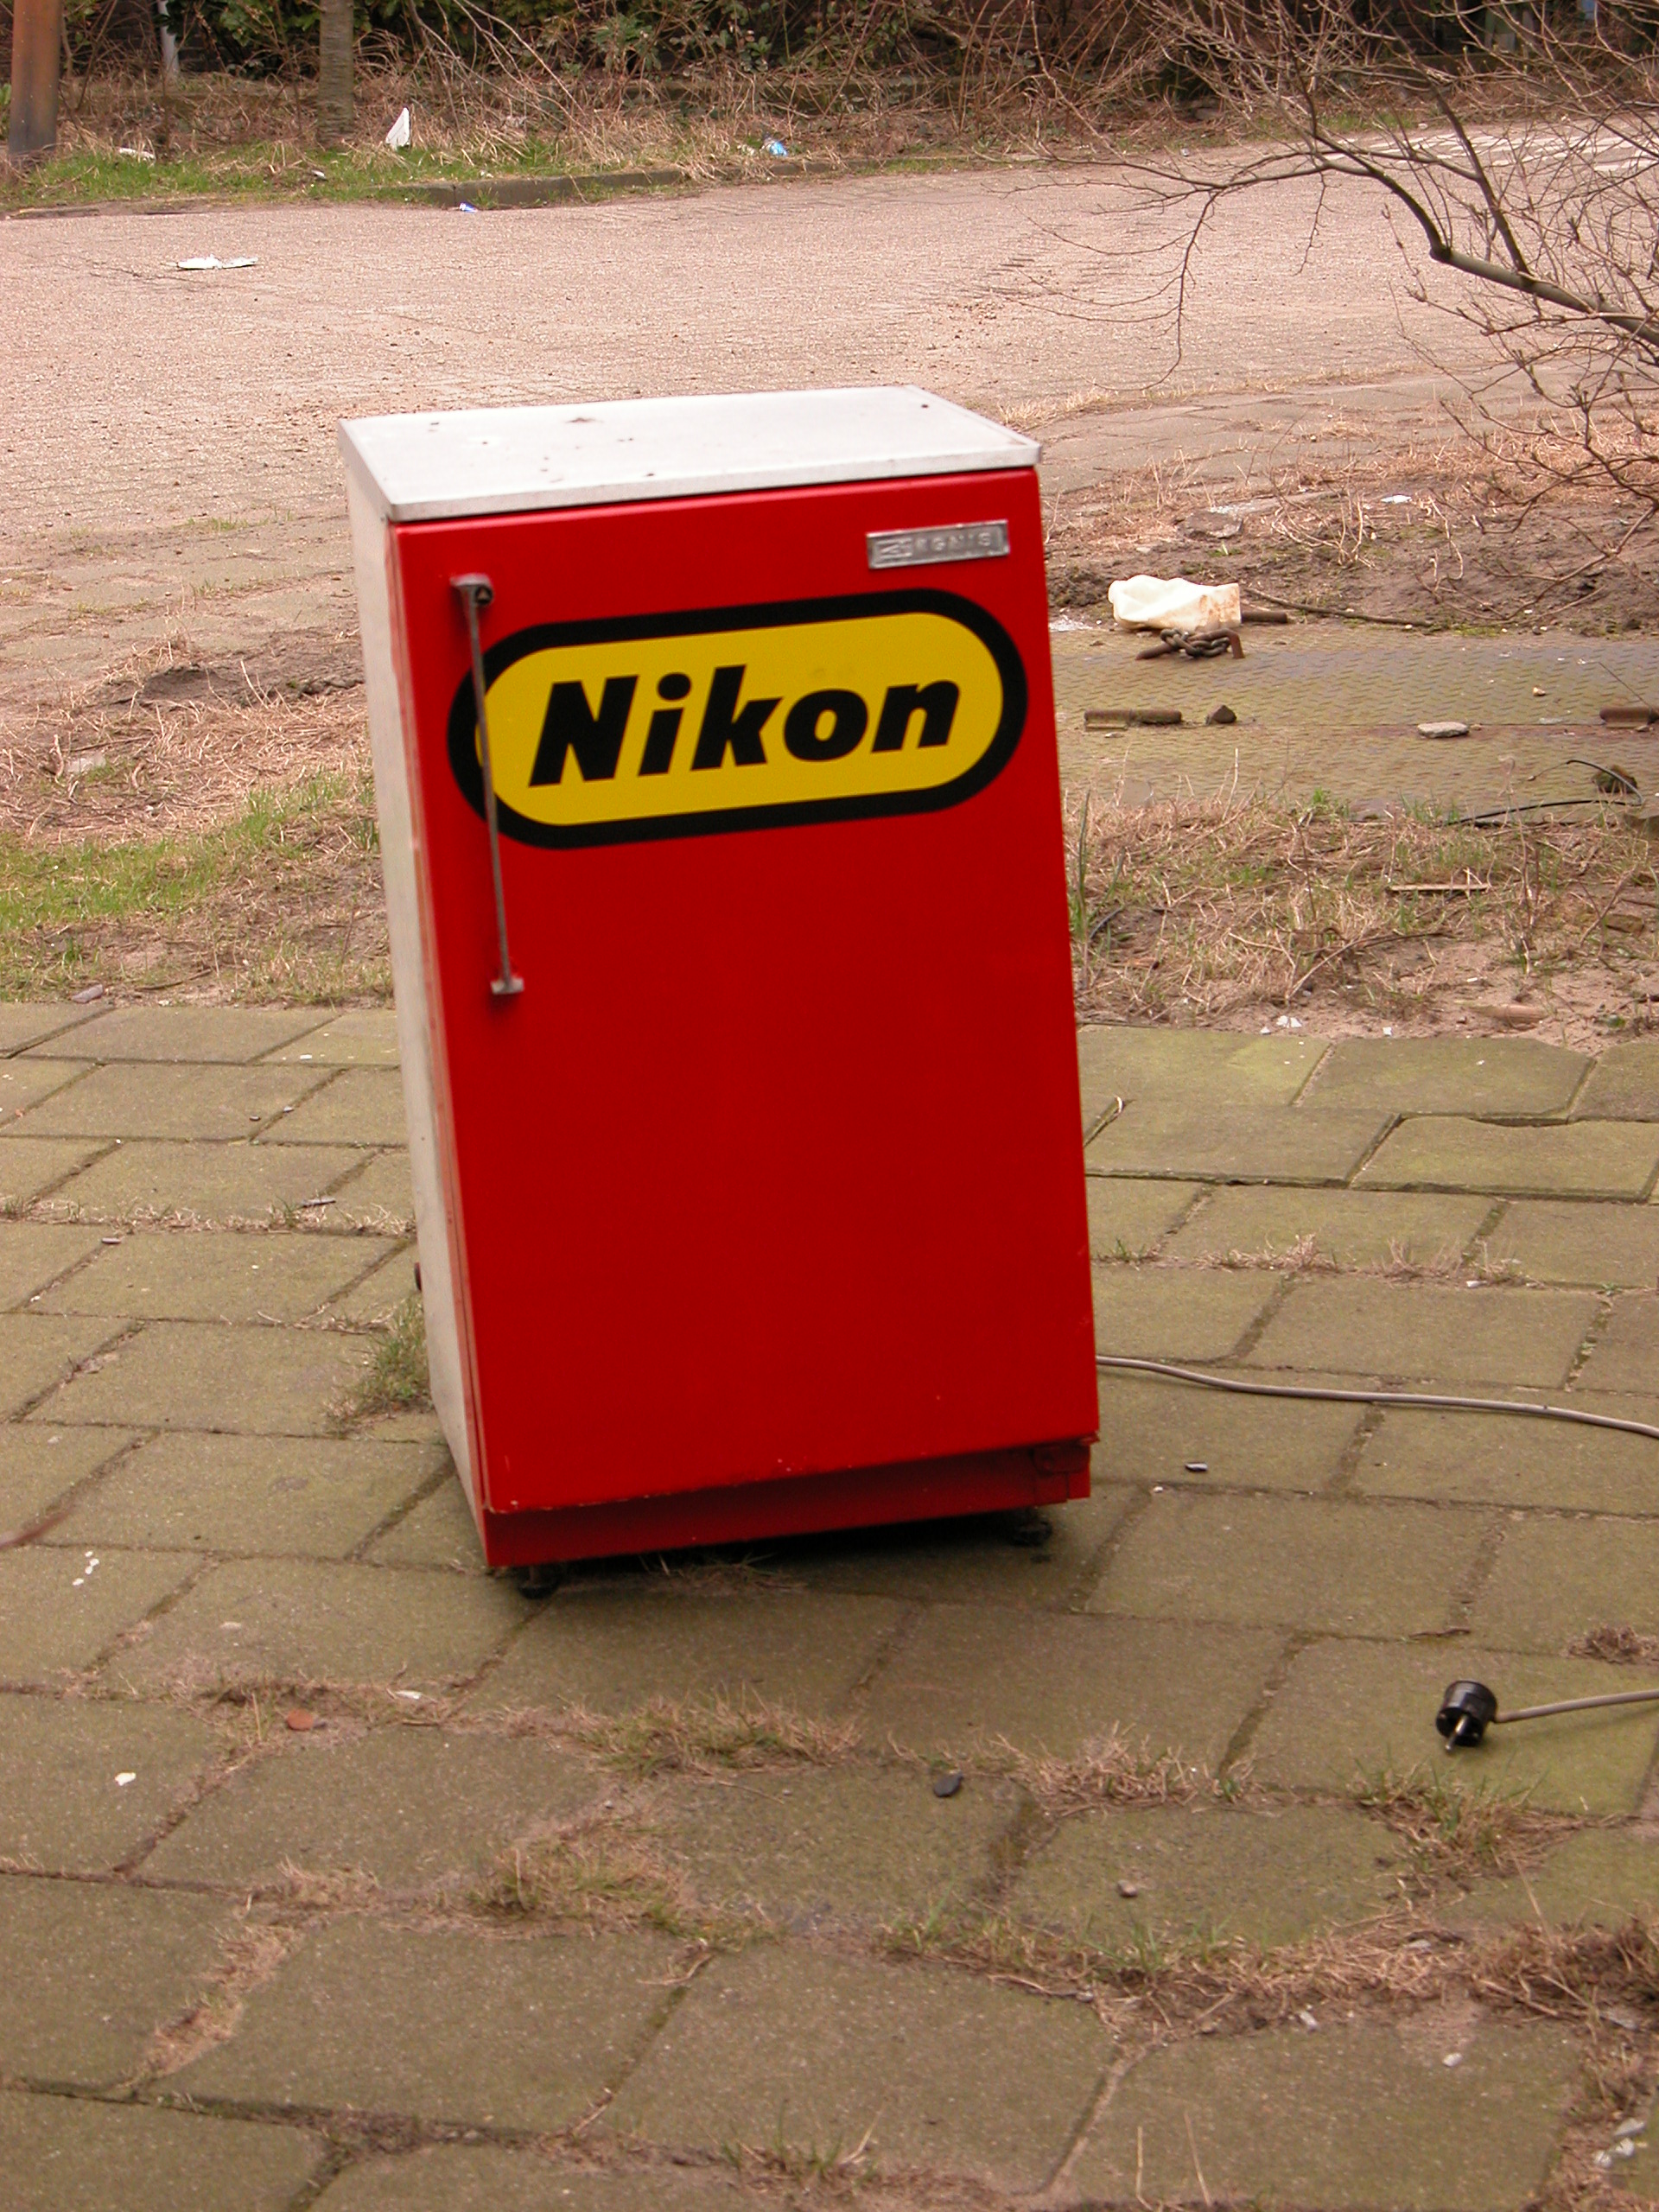 objects household fridge refridgerator nikon brand logo red rectangle